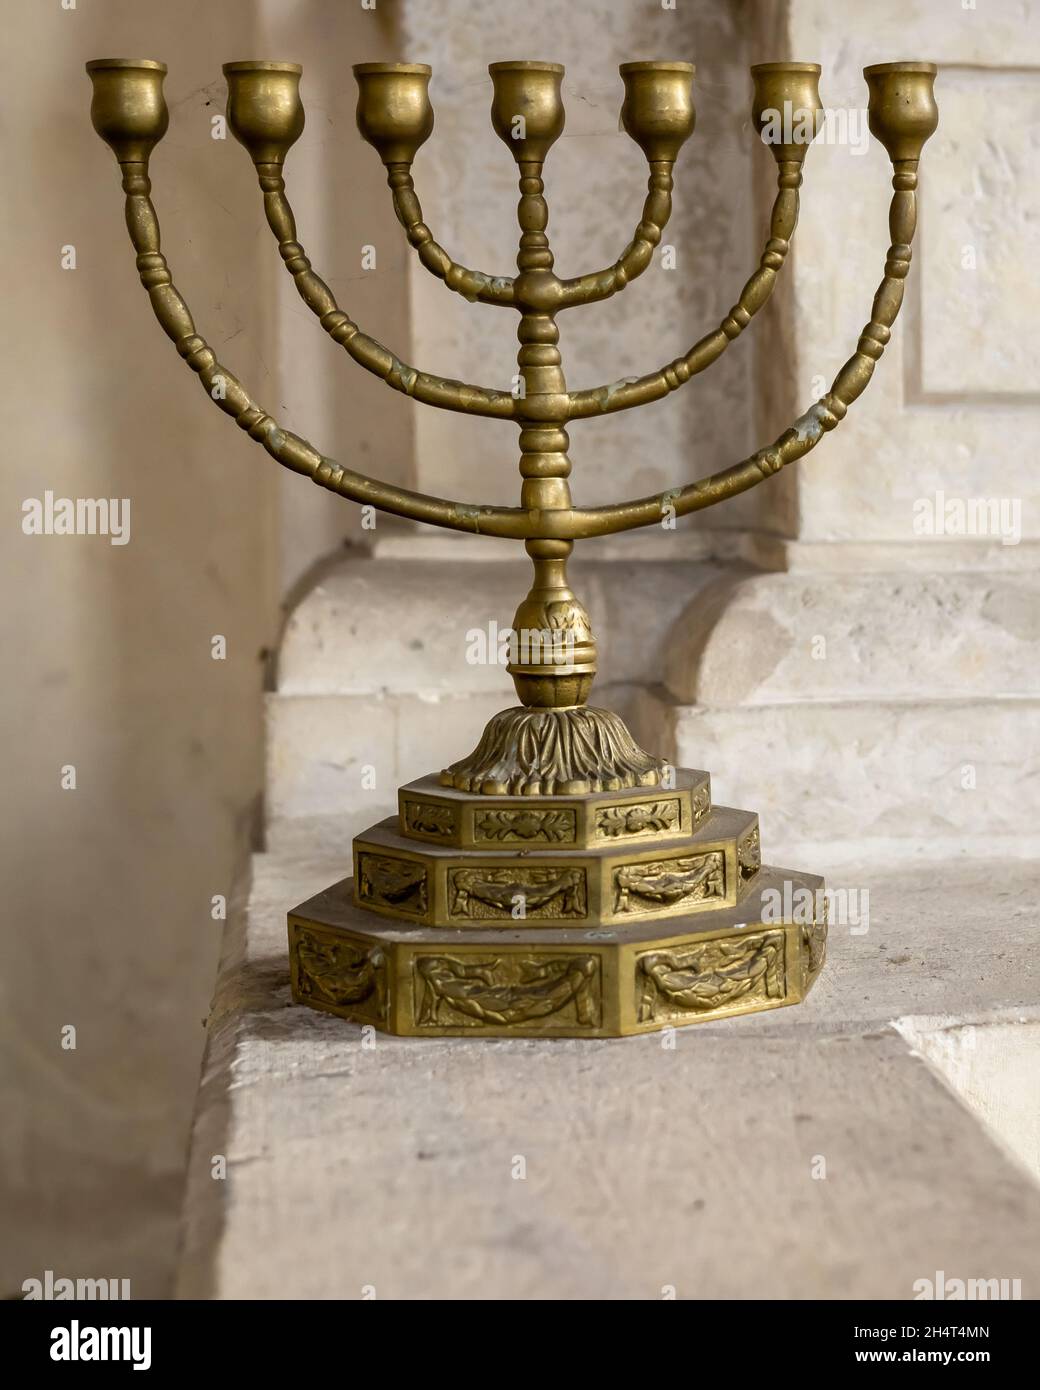 Une menorah dorée. Chandelier hébraïque de sept lampes (six branches). Banque D'Images